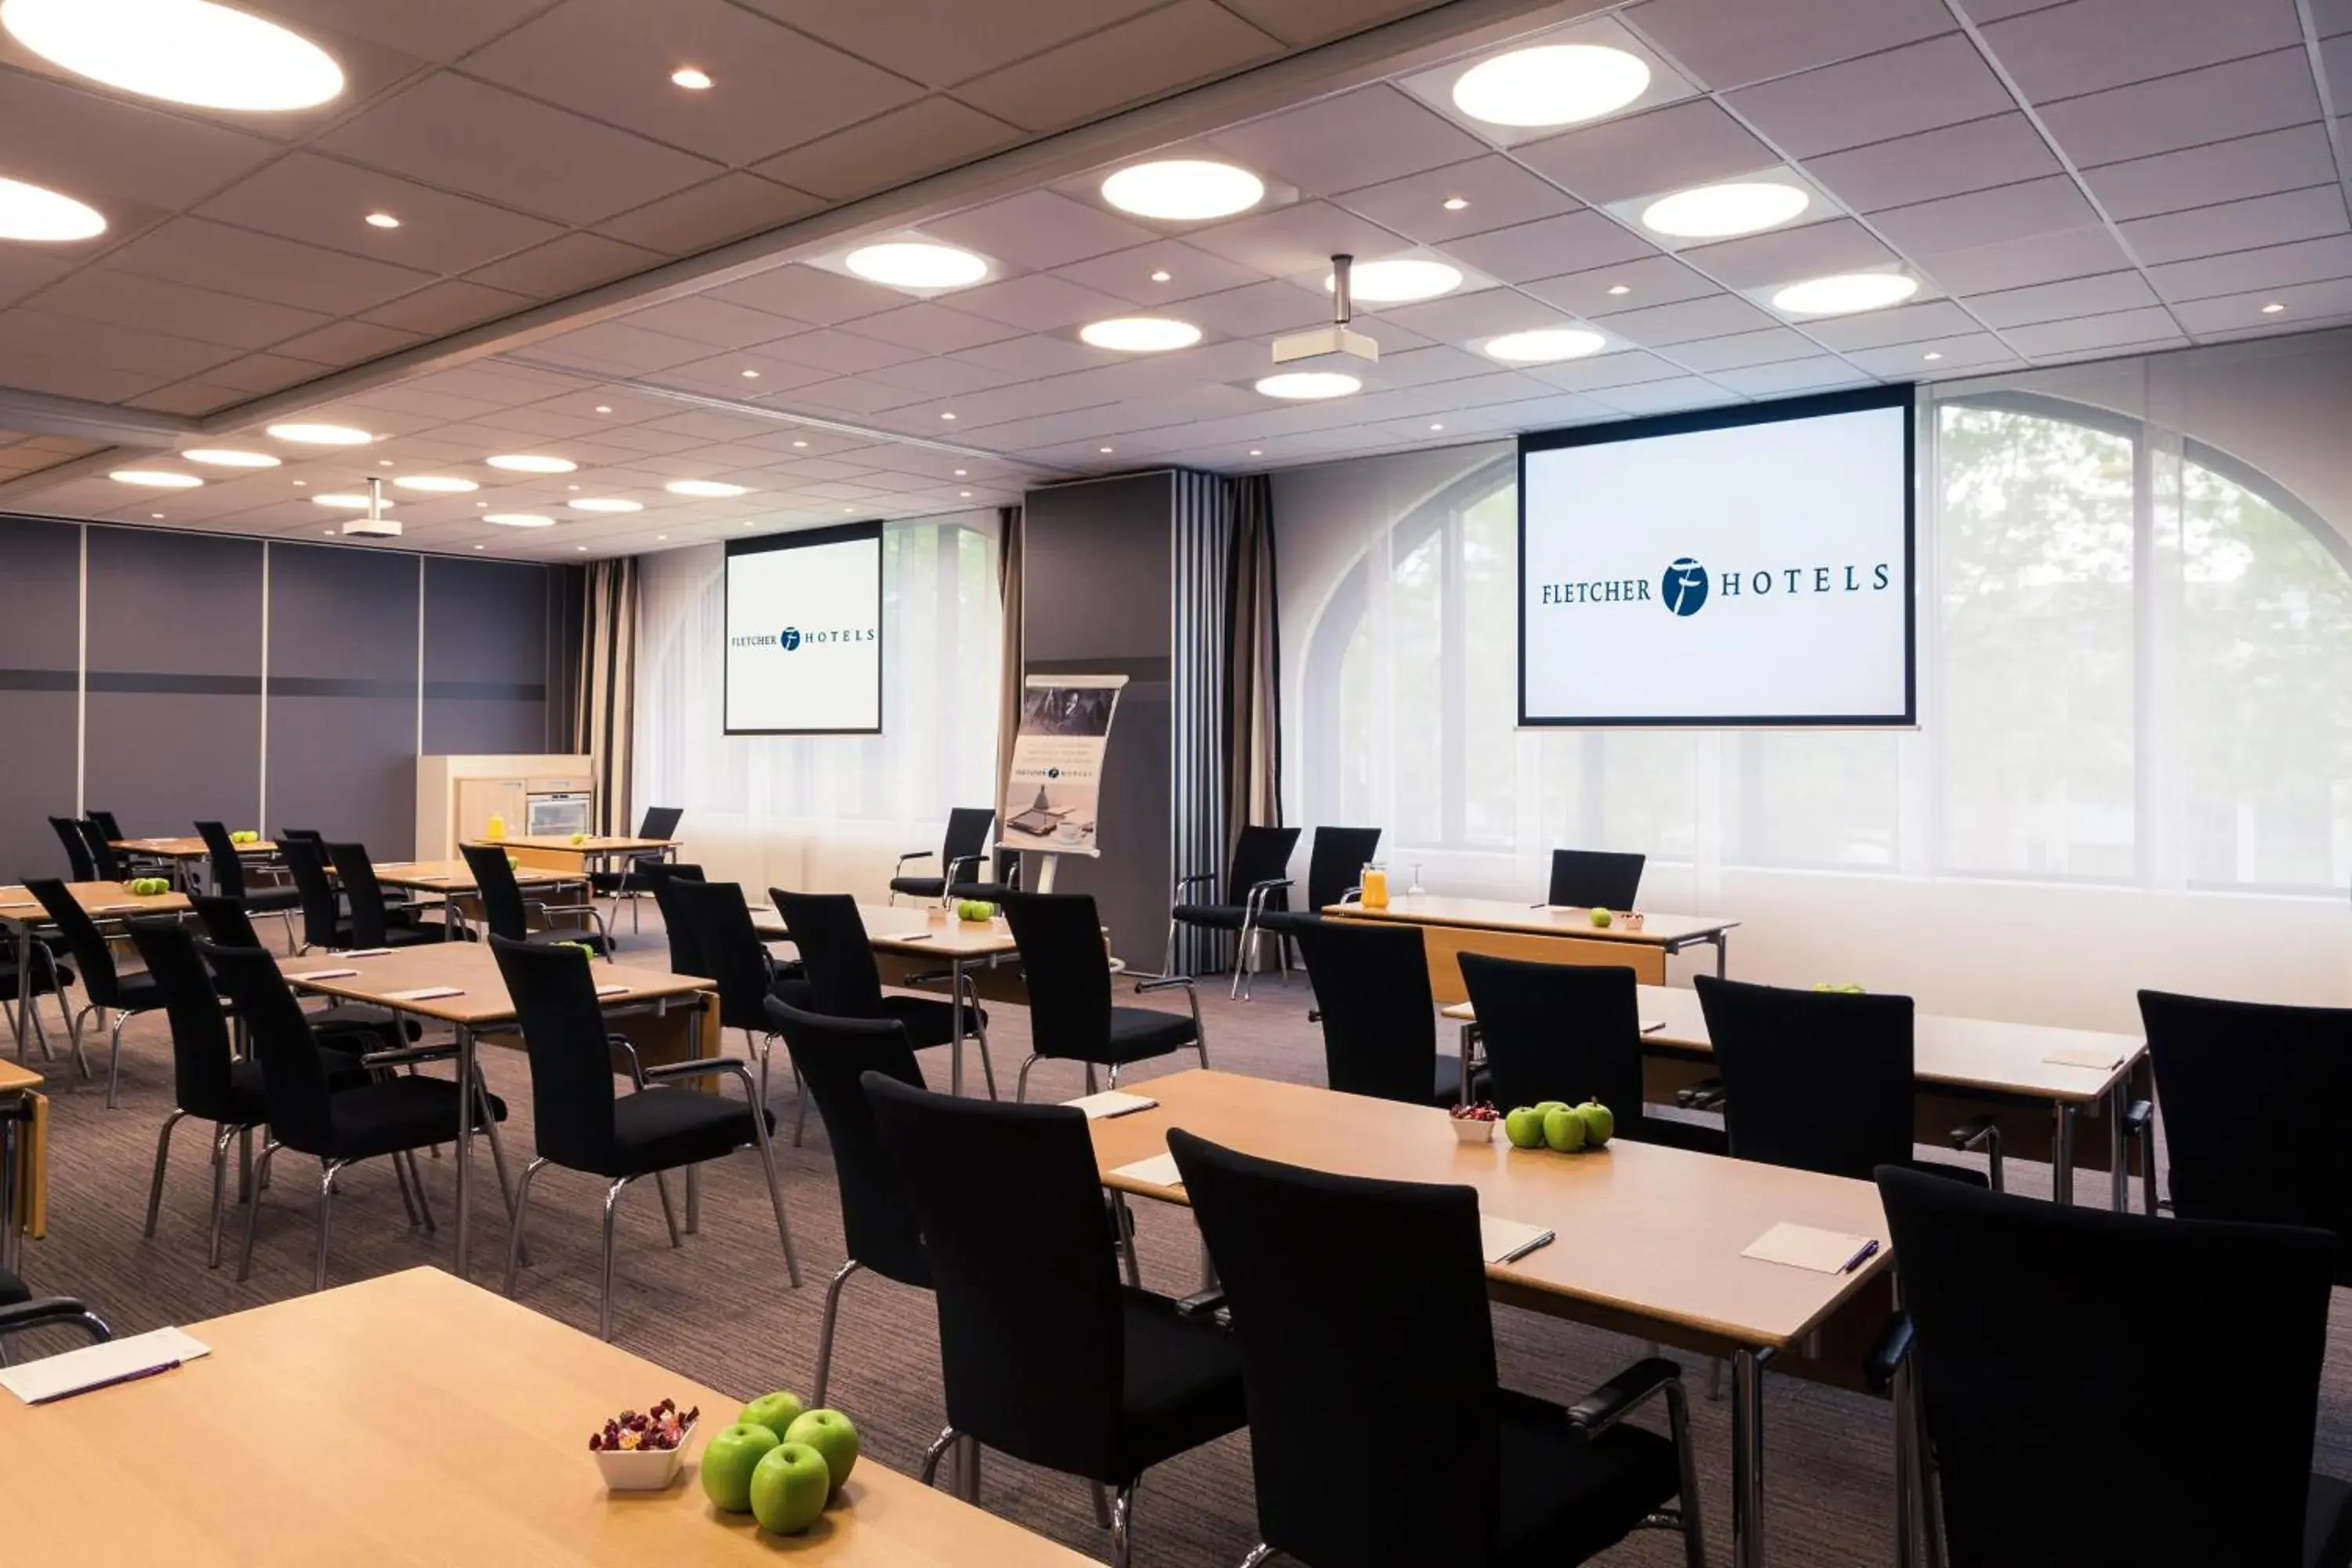 Meeting/conference room in Fletcher Hotel-Restaurant Nieuwegein-Utrecht